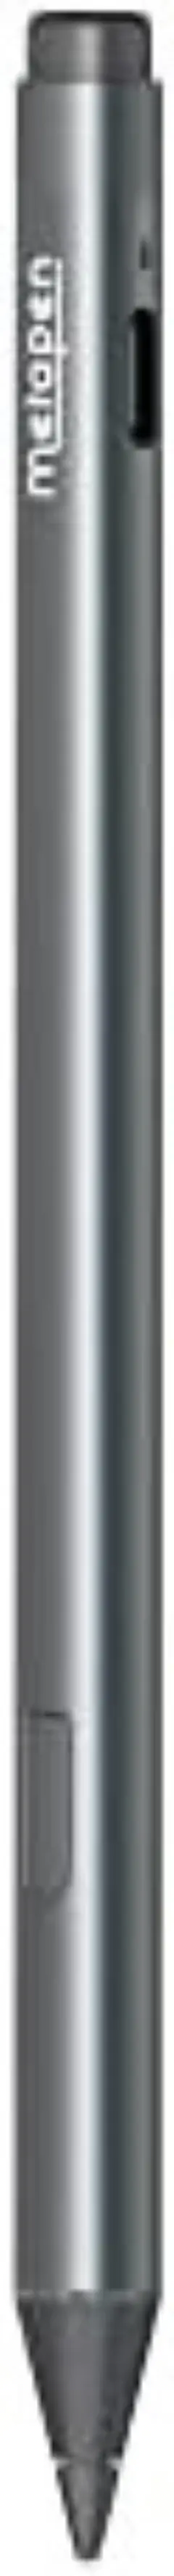 高性能❣大人気商品✨ Metapen Surface用タッチペン